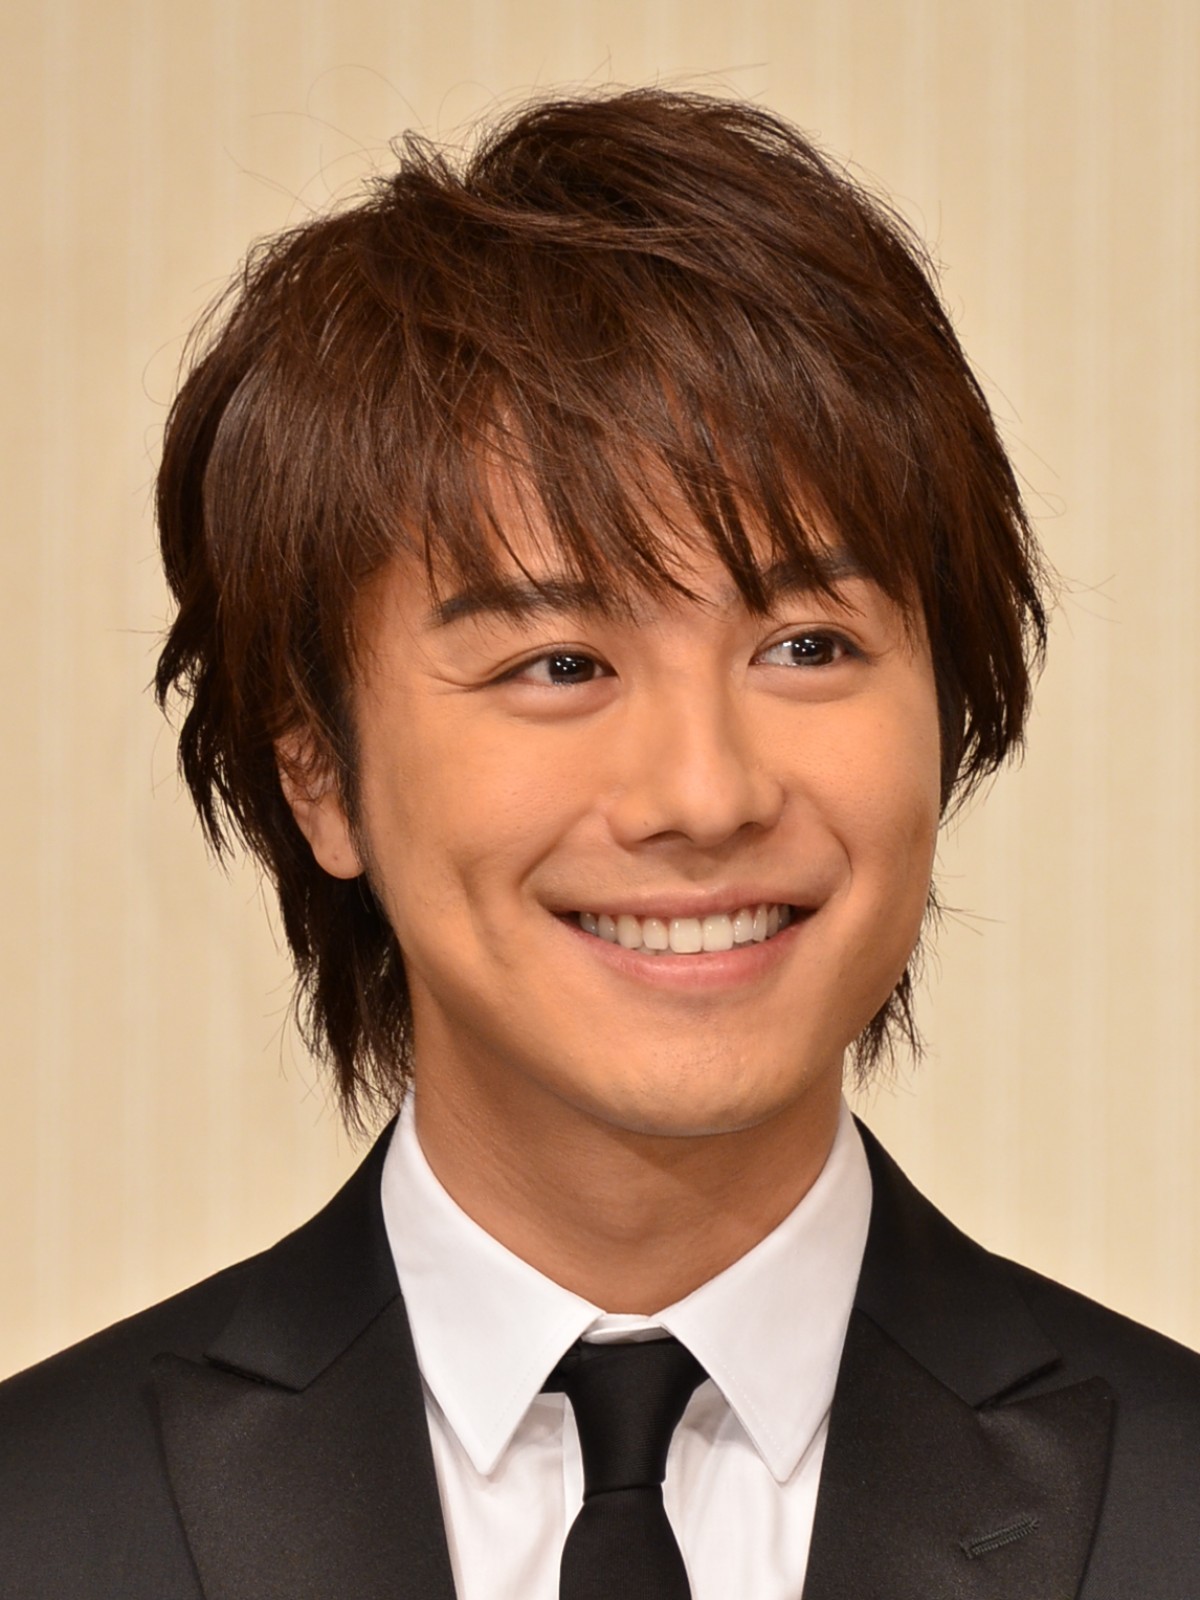 Takahiroの髪型15選 人気ランキングtop10 Exile 21最新版 Rank1 ランク1 人気ランキングまとめサイト 国内最大級